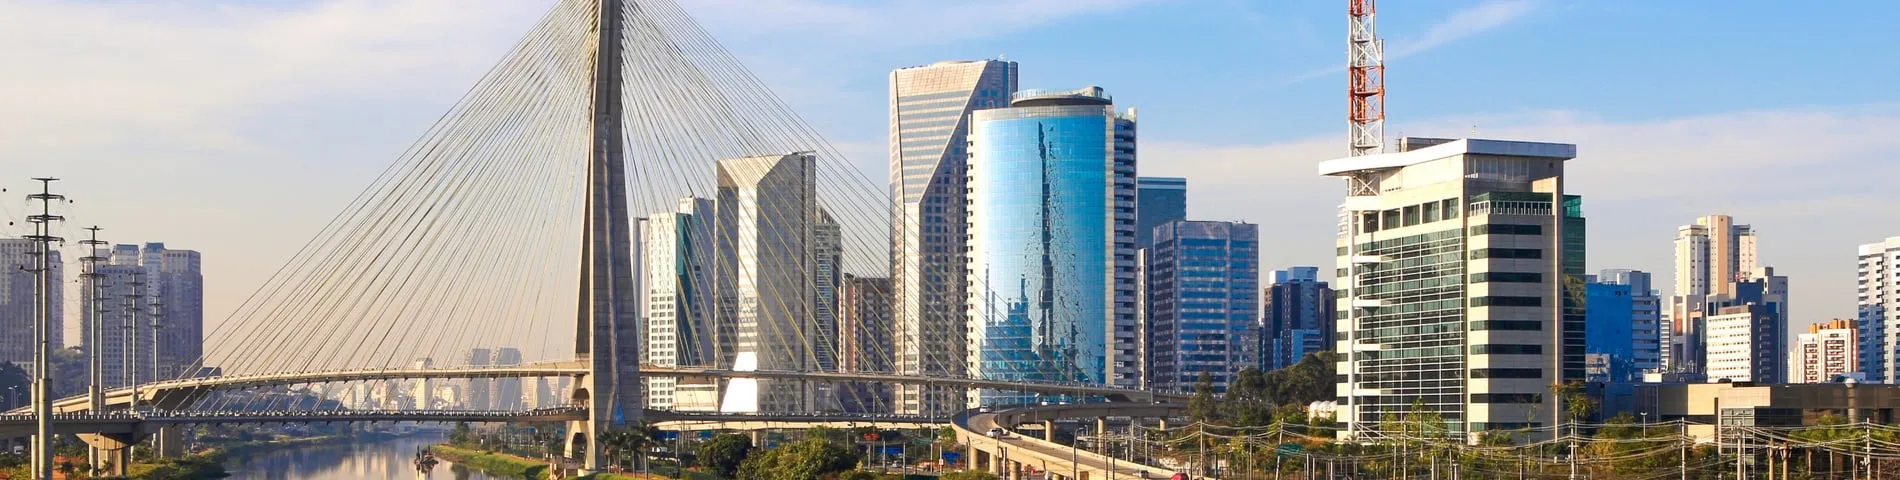 Sao Paulo - Curso general